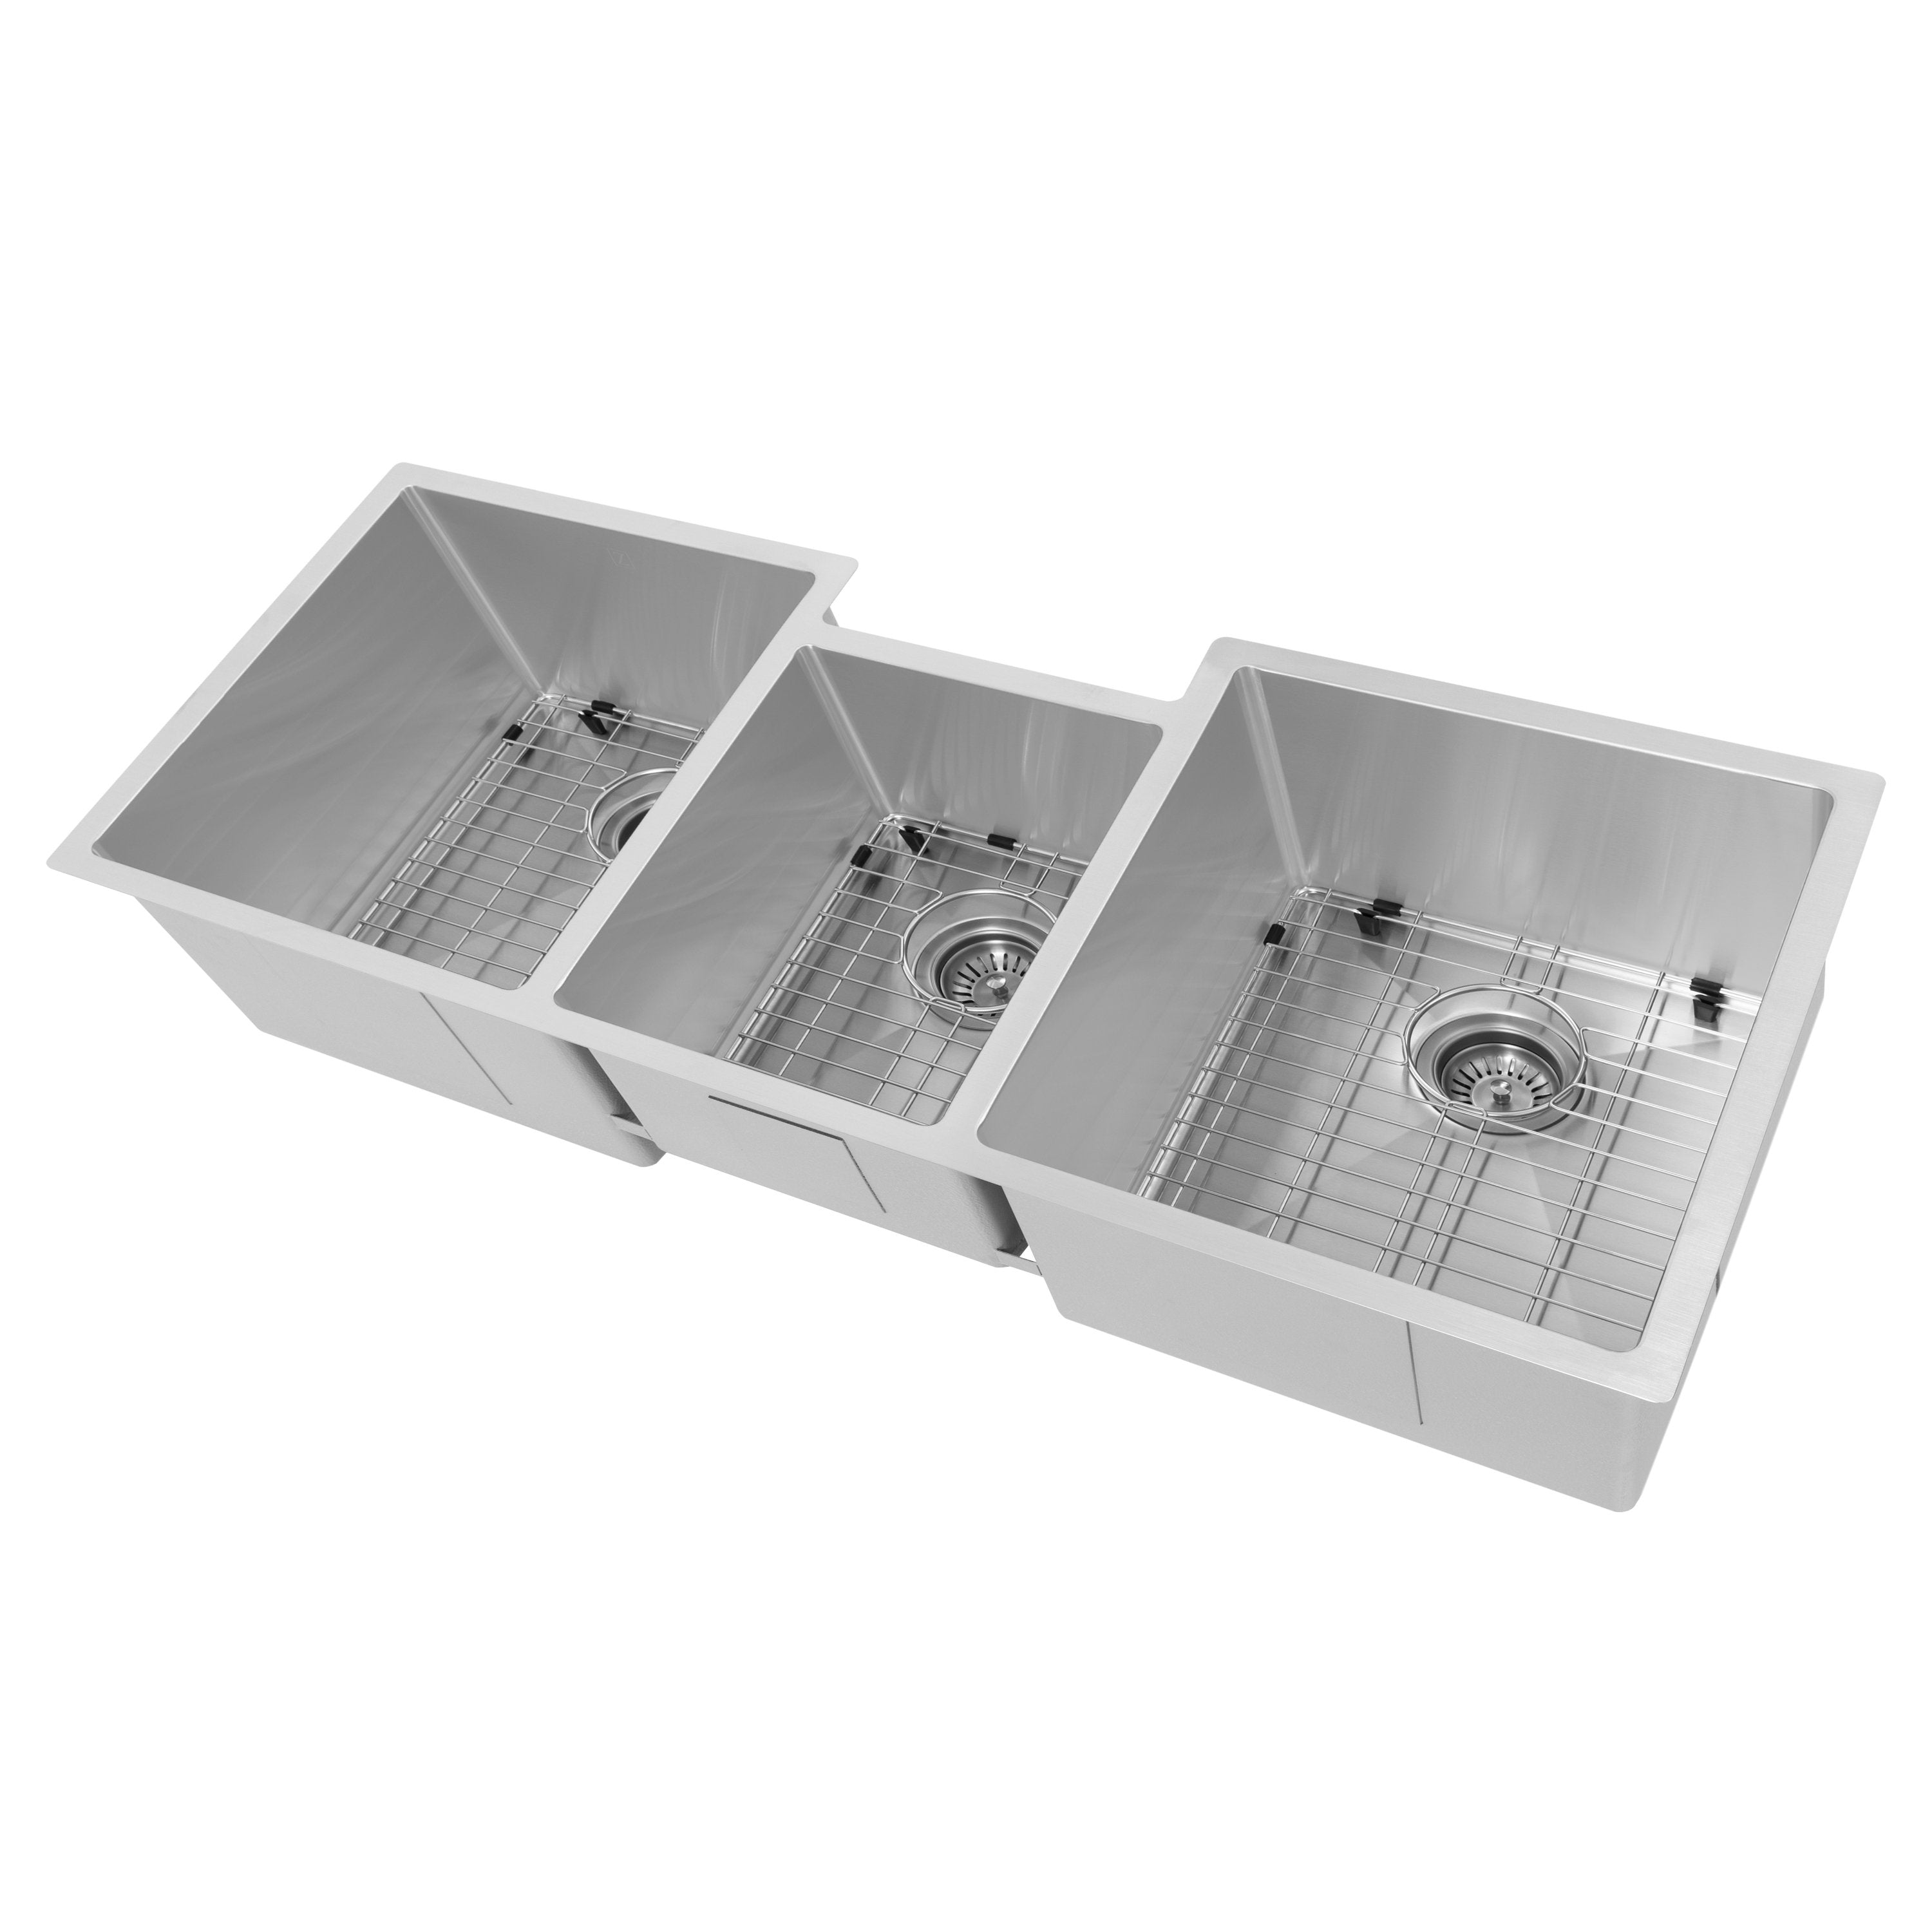 The Range Hood Store, ZLINE Breckenridge 45 Inch Undermount Single Bowl Sink with Accessories (SLT-45), SLT-45,